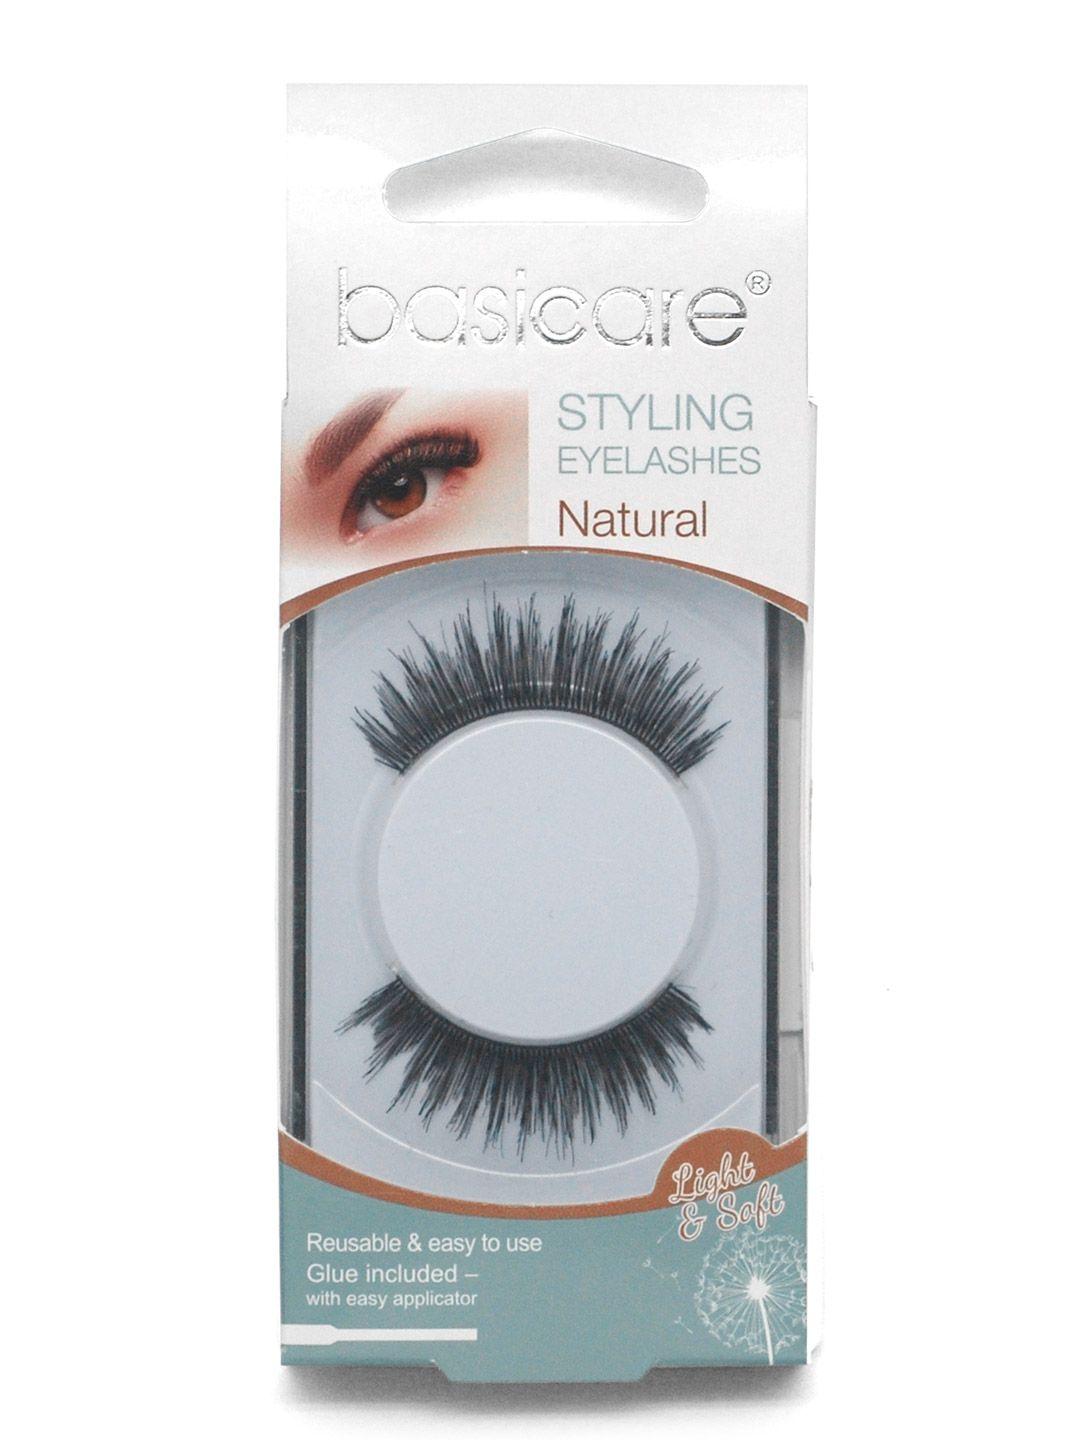 basicare-black-styling-eyelashes-with-latex-glue-&-nature-hair